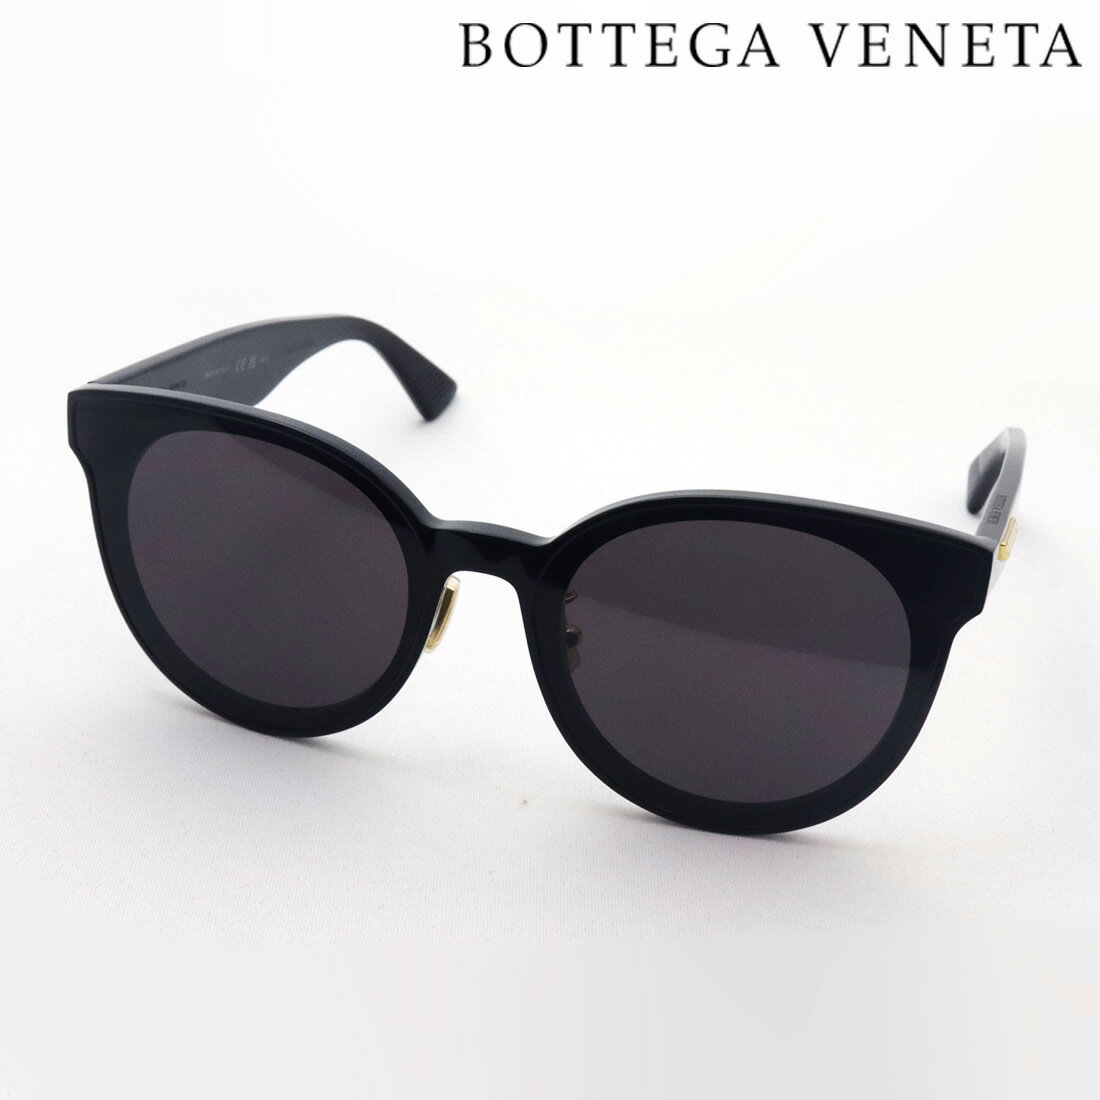 ボッテガ・ヴェネタ サングラス メンズ 【ボッテガ ヴェネタ サングラス 正規販売店】BOTTEGA VENETA BV0304SK 001 NEW CLASICC ボッテガヴェネタ Made In Italy レディース メンズ ボストン ブラック系